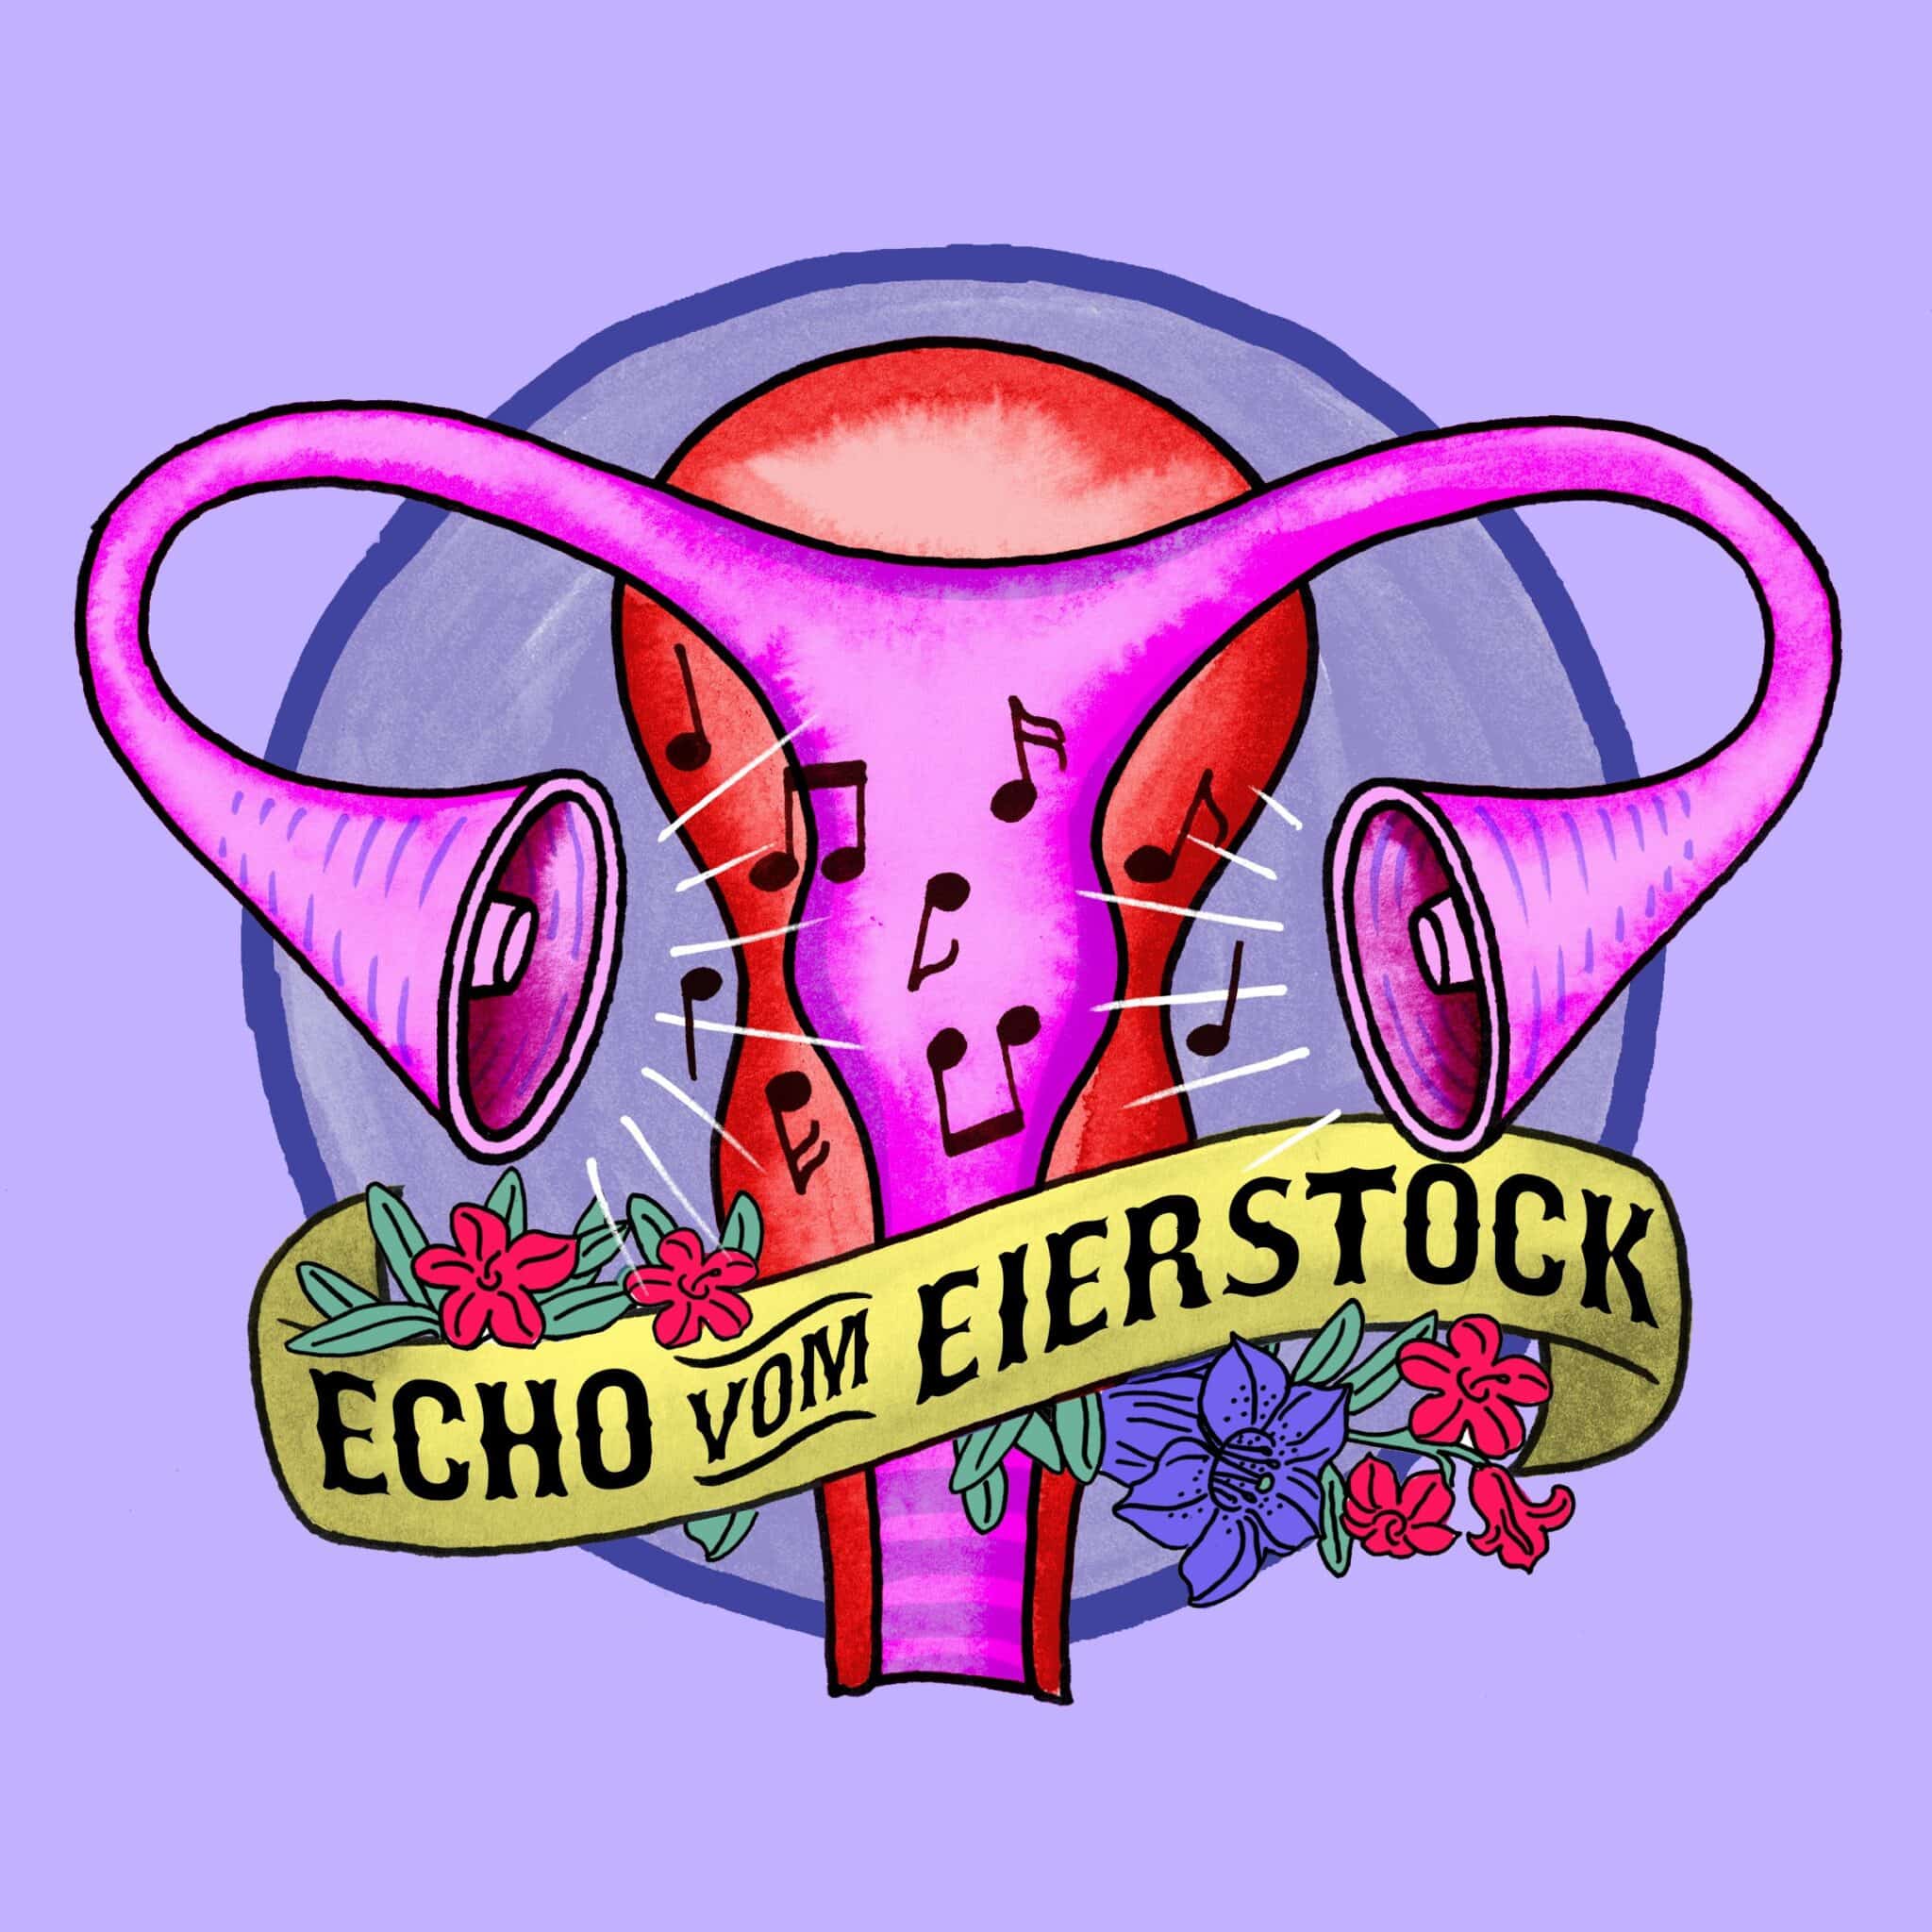 Profilfoto Echo vom Eierstock